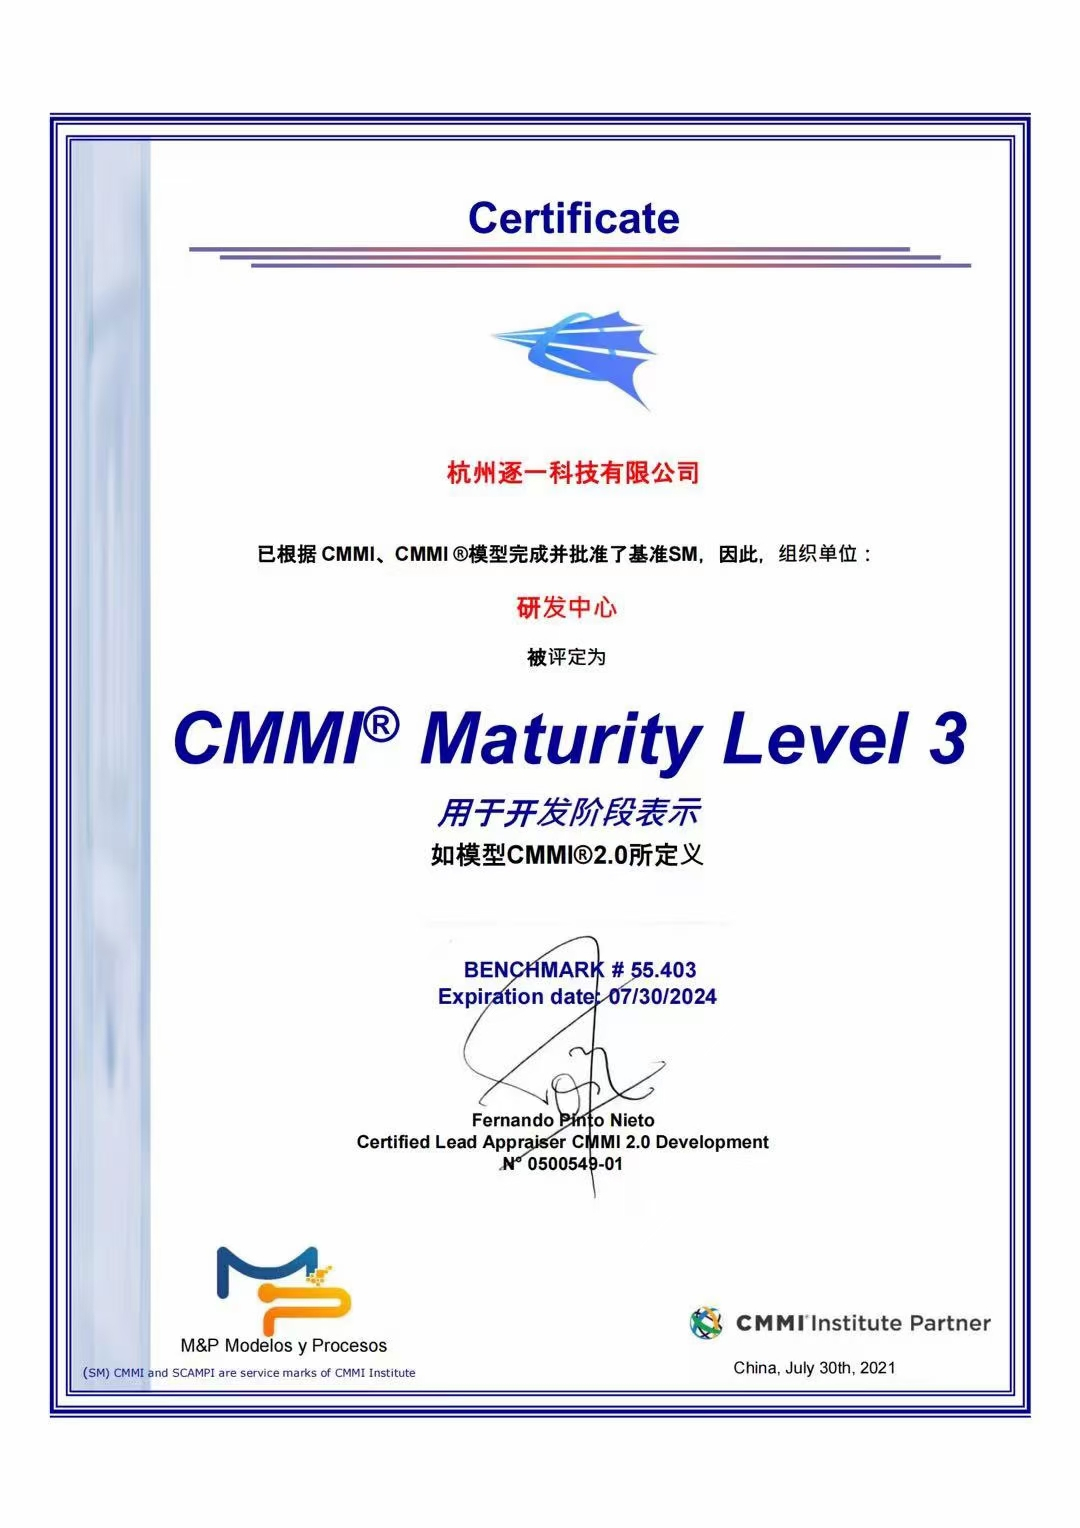 集团旗下杭州逐一科技有限公司(以下简称:逐一科技)顺利通过cmmi3认证